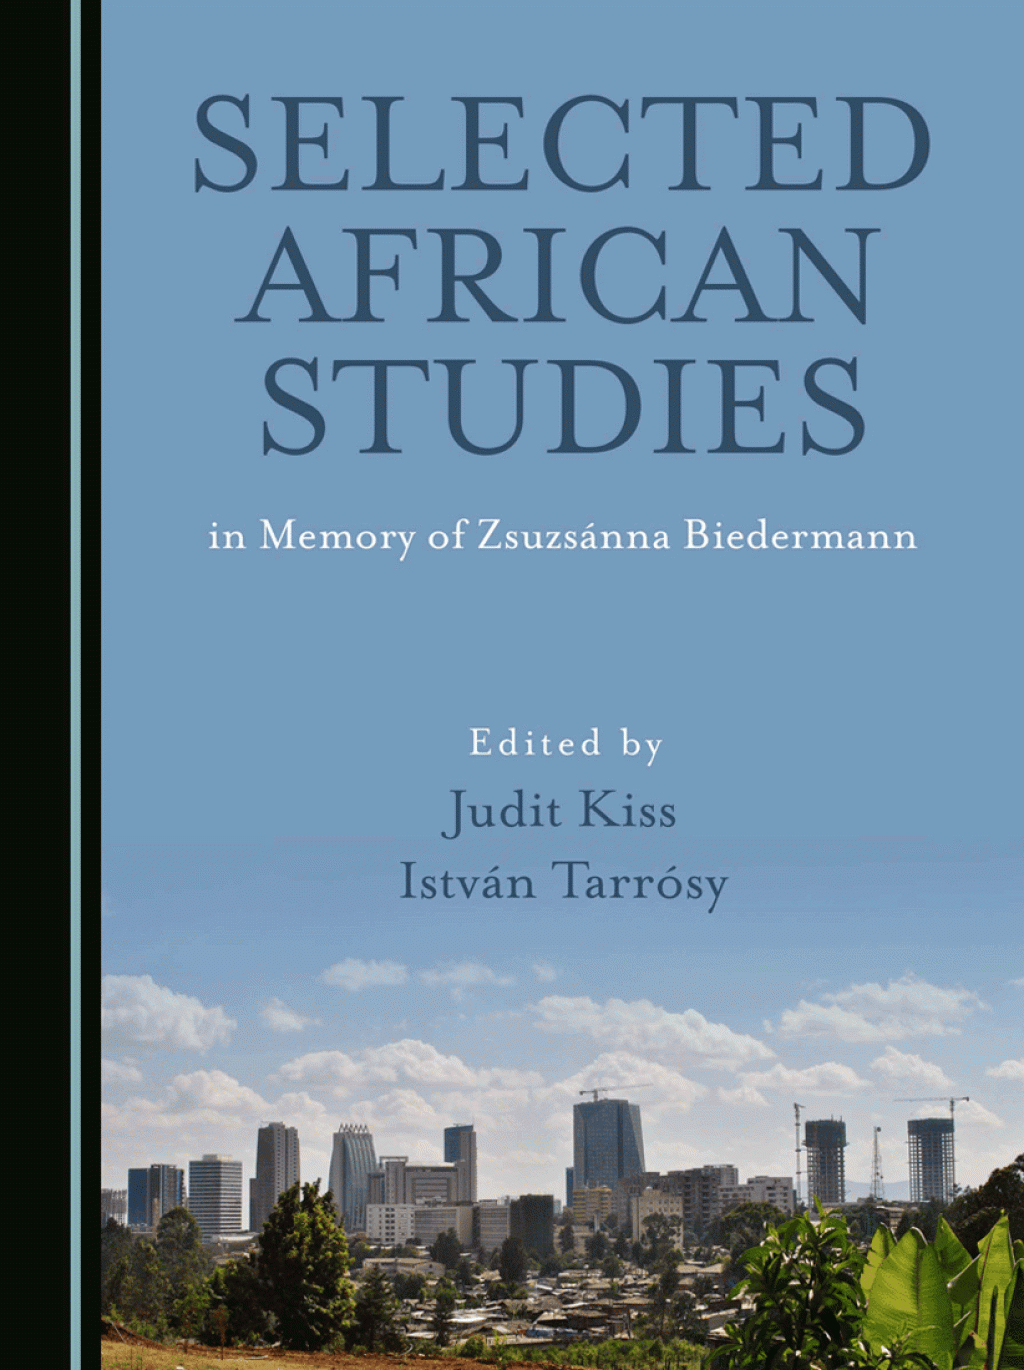 AfricanStudies